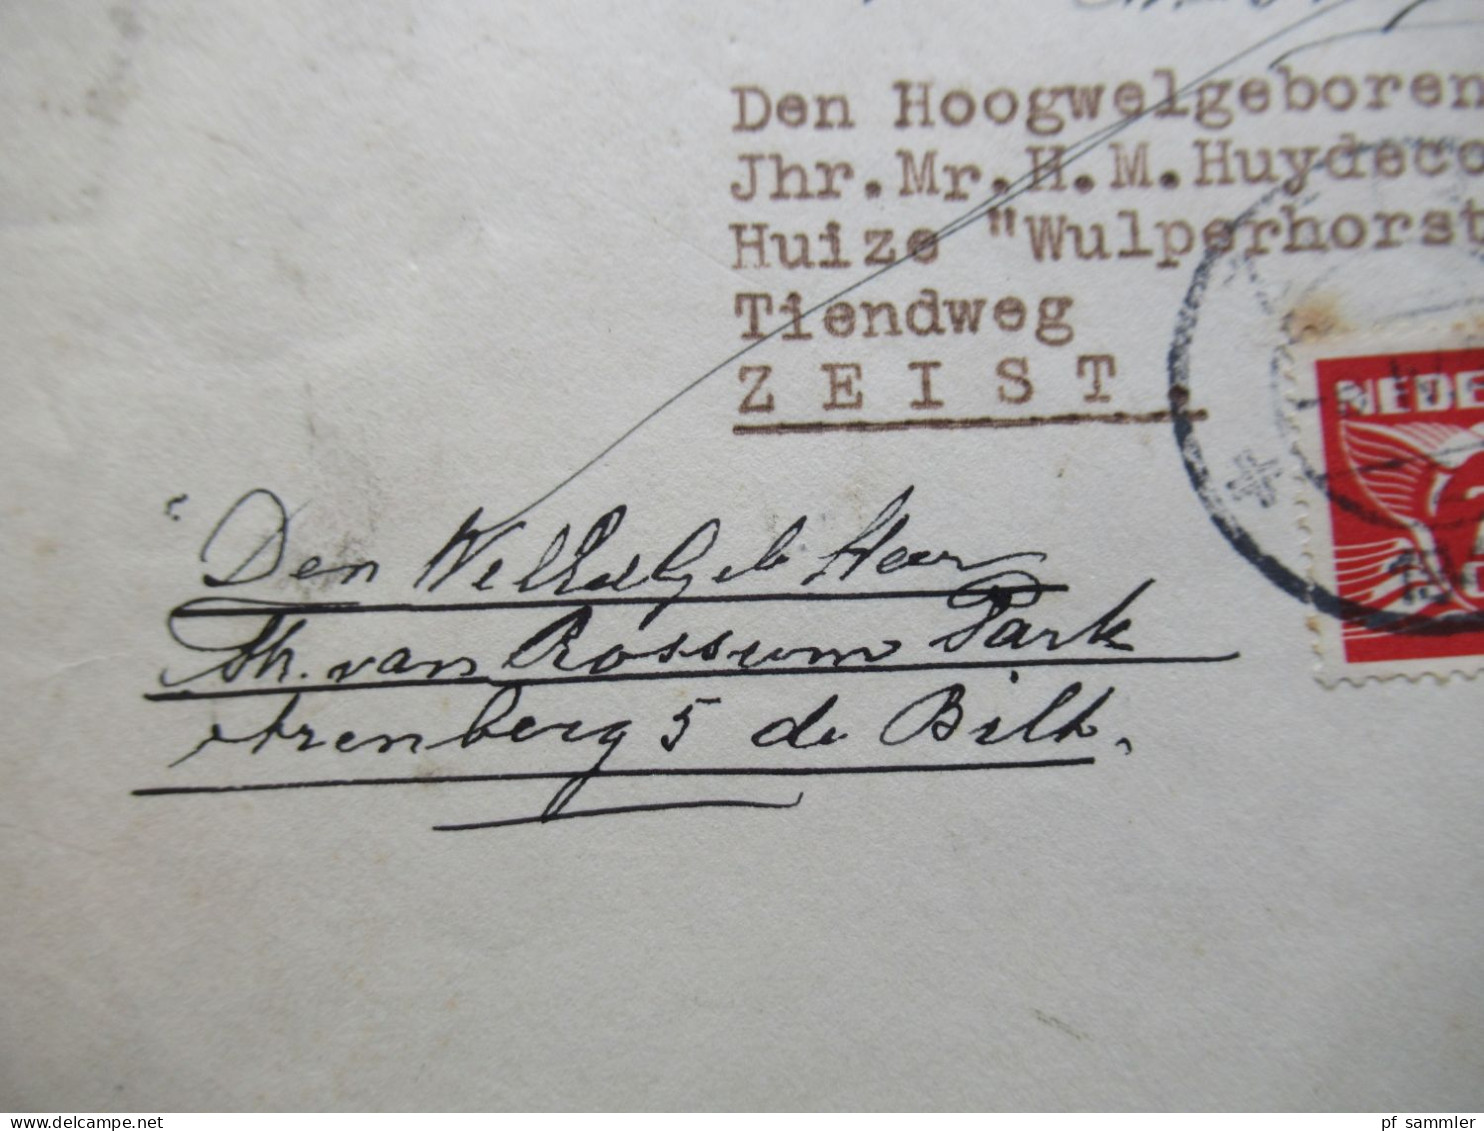 Niederlande 1943 Fliegende Taube Nr.381 (2) MeF nach Zeist gesendet und dort mit Vermerken!! Bogenrand mit Perfin verkle